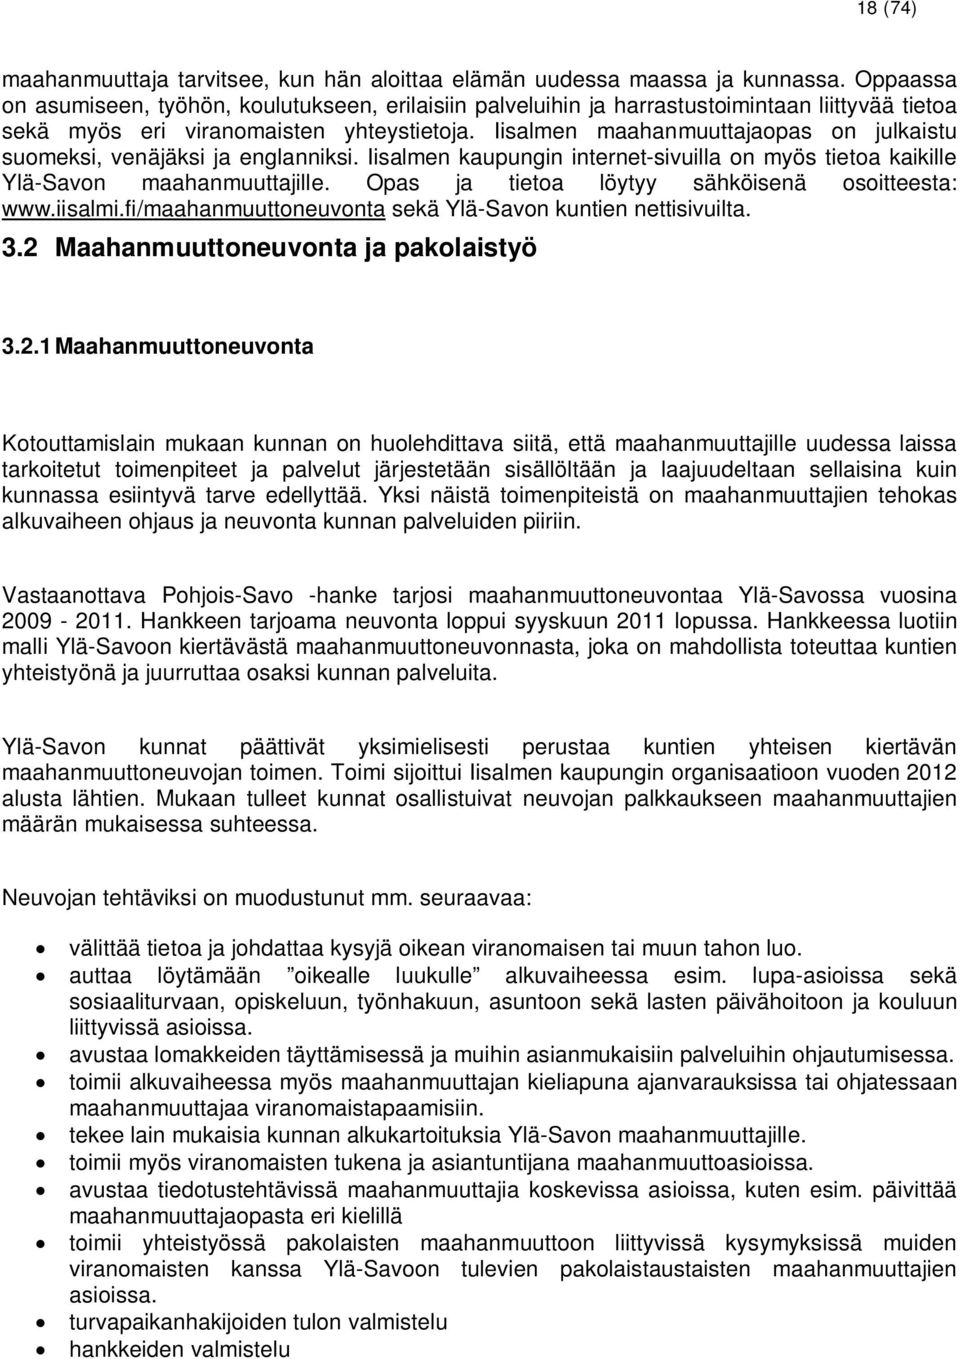 Iisalmen maahanmuuttajaopas on julkaistu suomeksi, venäjäksi ja englanniksi. Iisalmen kaupungin internet-sivuilla on myös tietoa kaikille Ylä-Savon maahanmuuttajille.